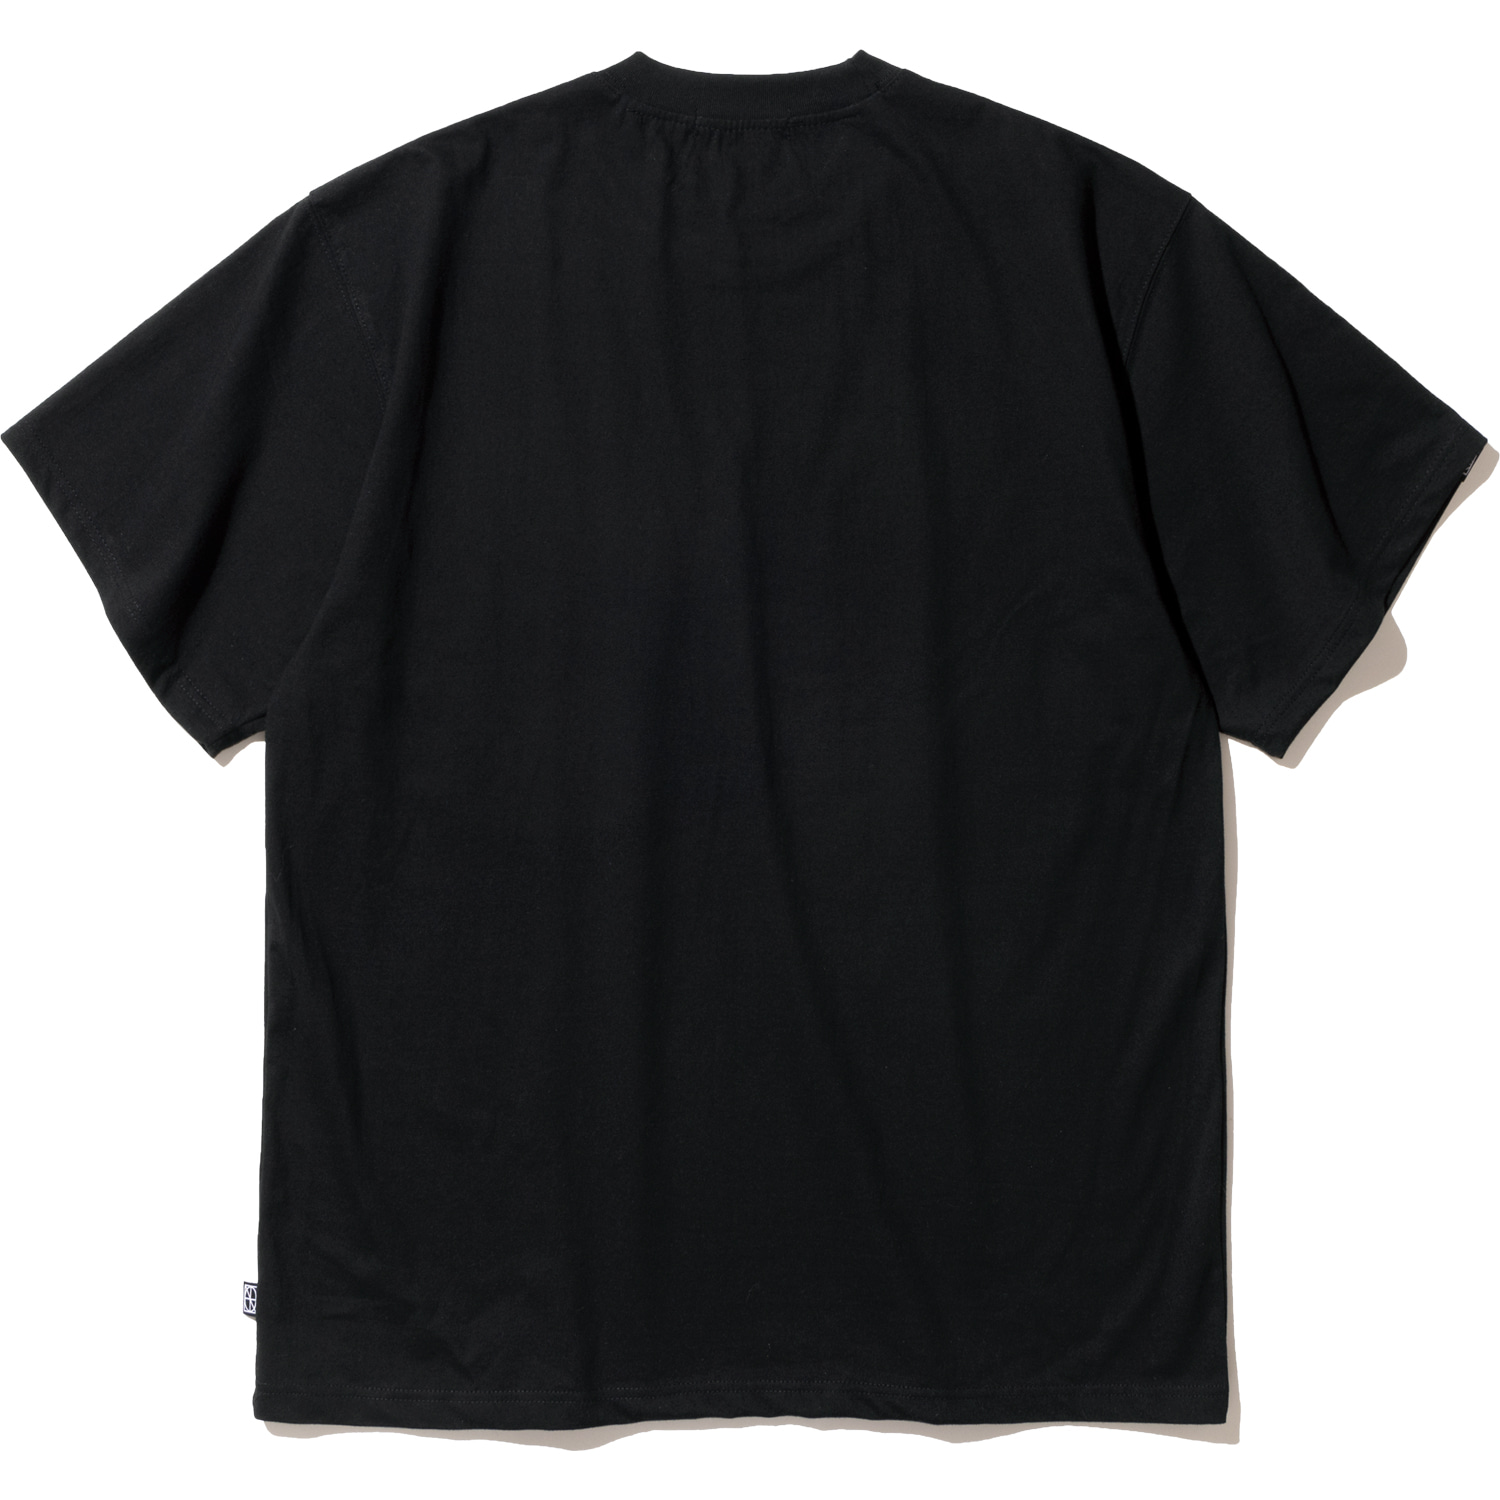 Little Girl T-Shirts - Black,NOT4NERD